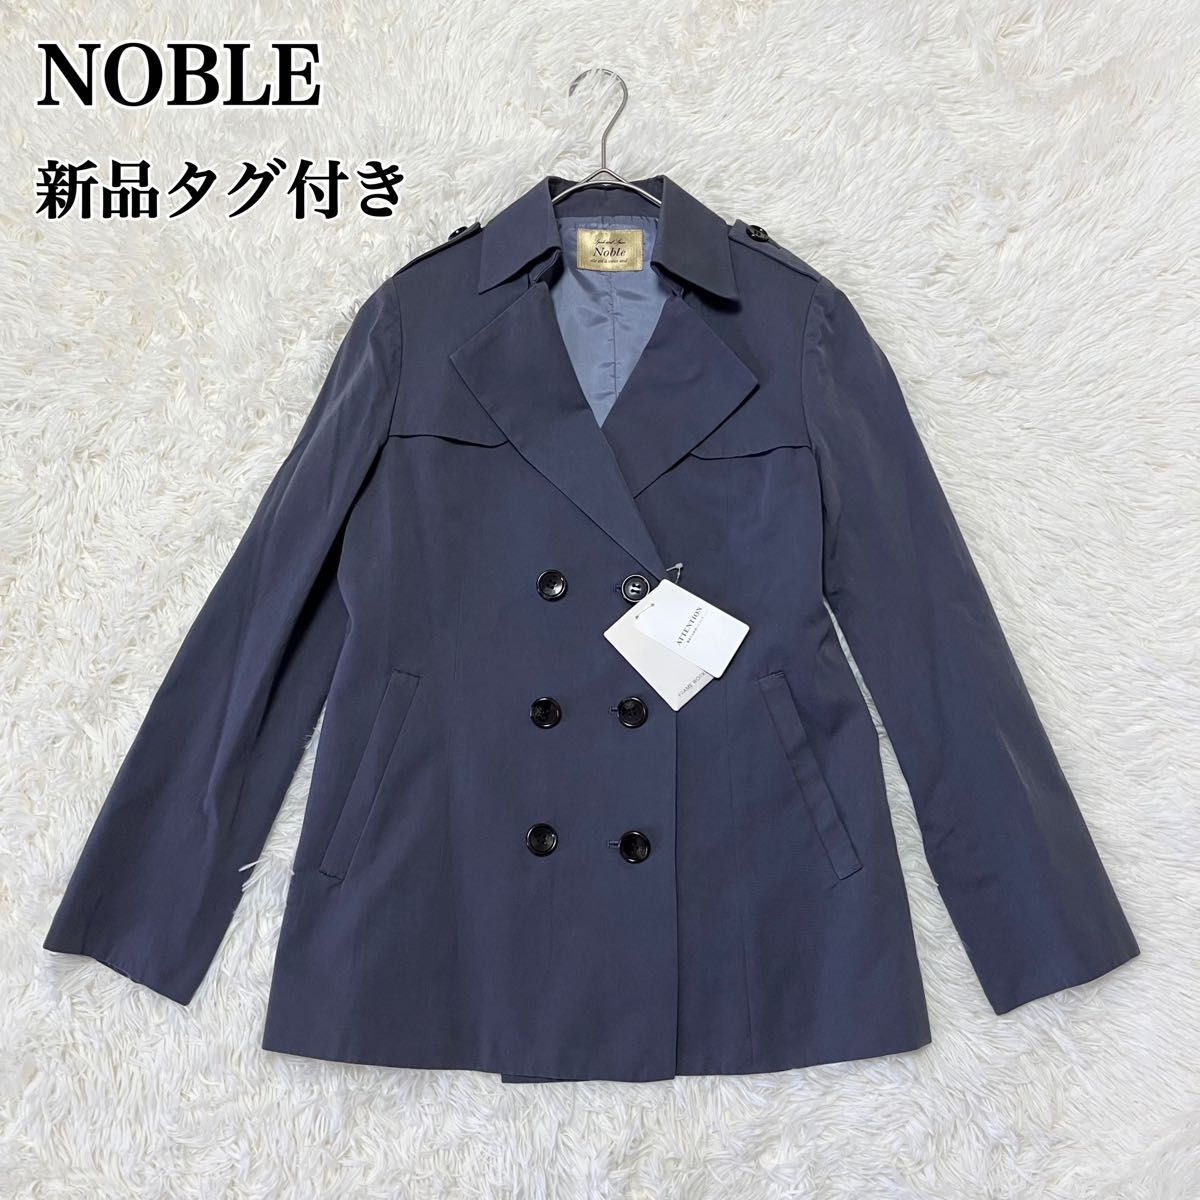 【新品】NOBLE ノーブル ショートトレンチコート スプリングコート 春物 M